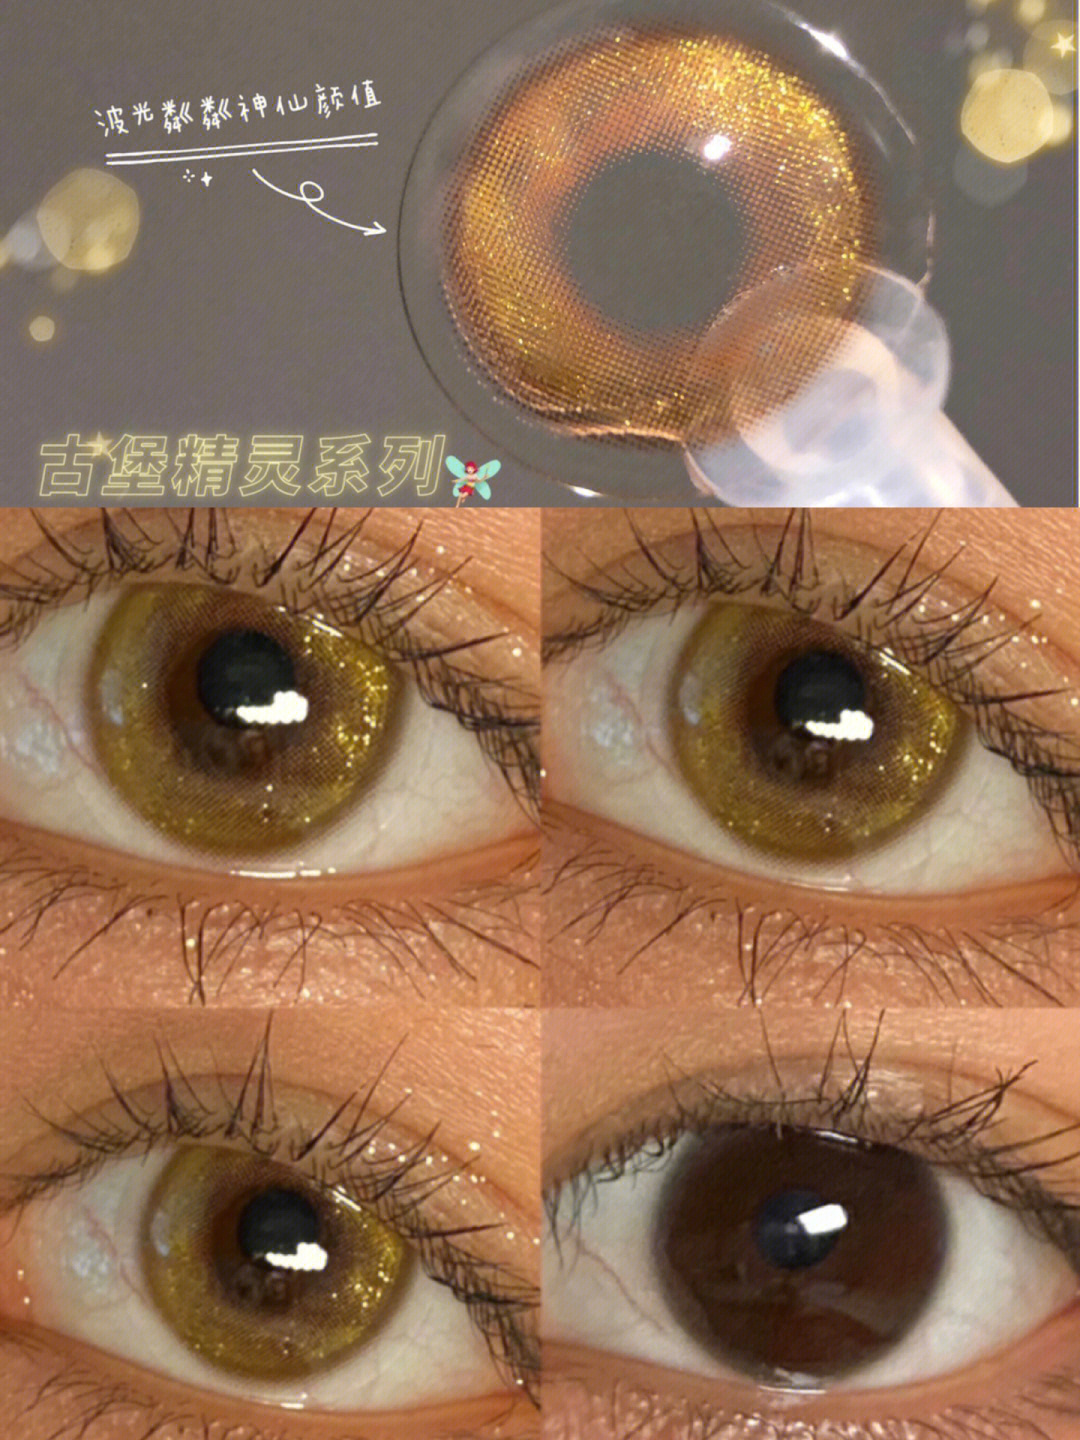 琥珀色镜片77闪闪的金粉甜甜的焦糖色奶咖色的边缘设计 自然的扩瞳